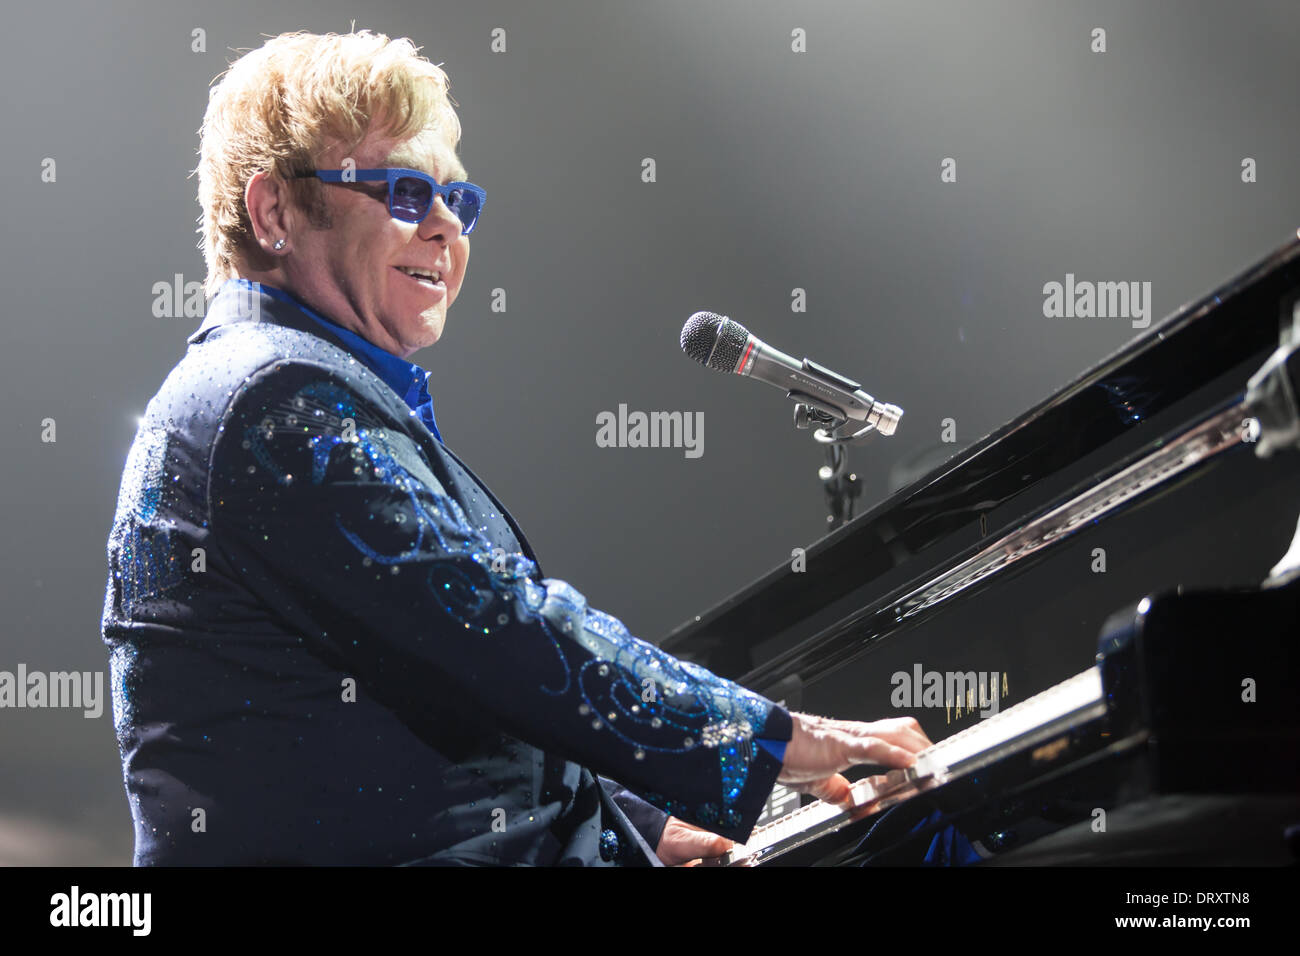 London Ontario, Canada. Febbraio 3, 2014. Sir Elton John esegue in concerto a Budweiser giardini. Essa è stata la sua prima performance canadese del suo 2014 World Tour. La sua ultima performance di Londra è stata nel 2006 nello stesso luogo. Credito: Mark Spowart/Alamy Live News Foto Stock